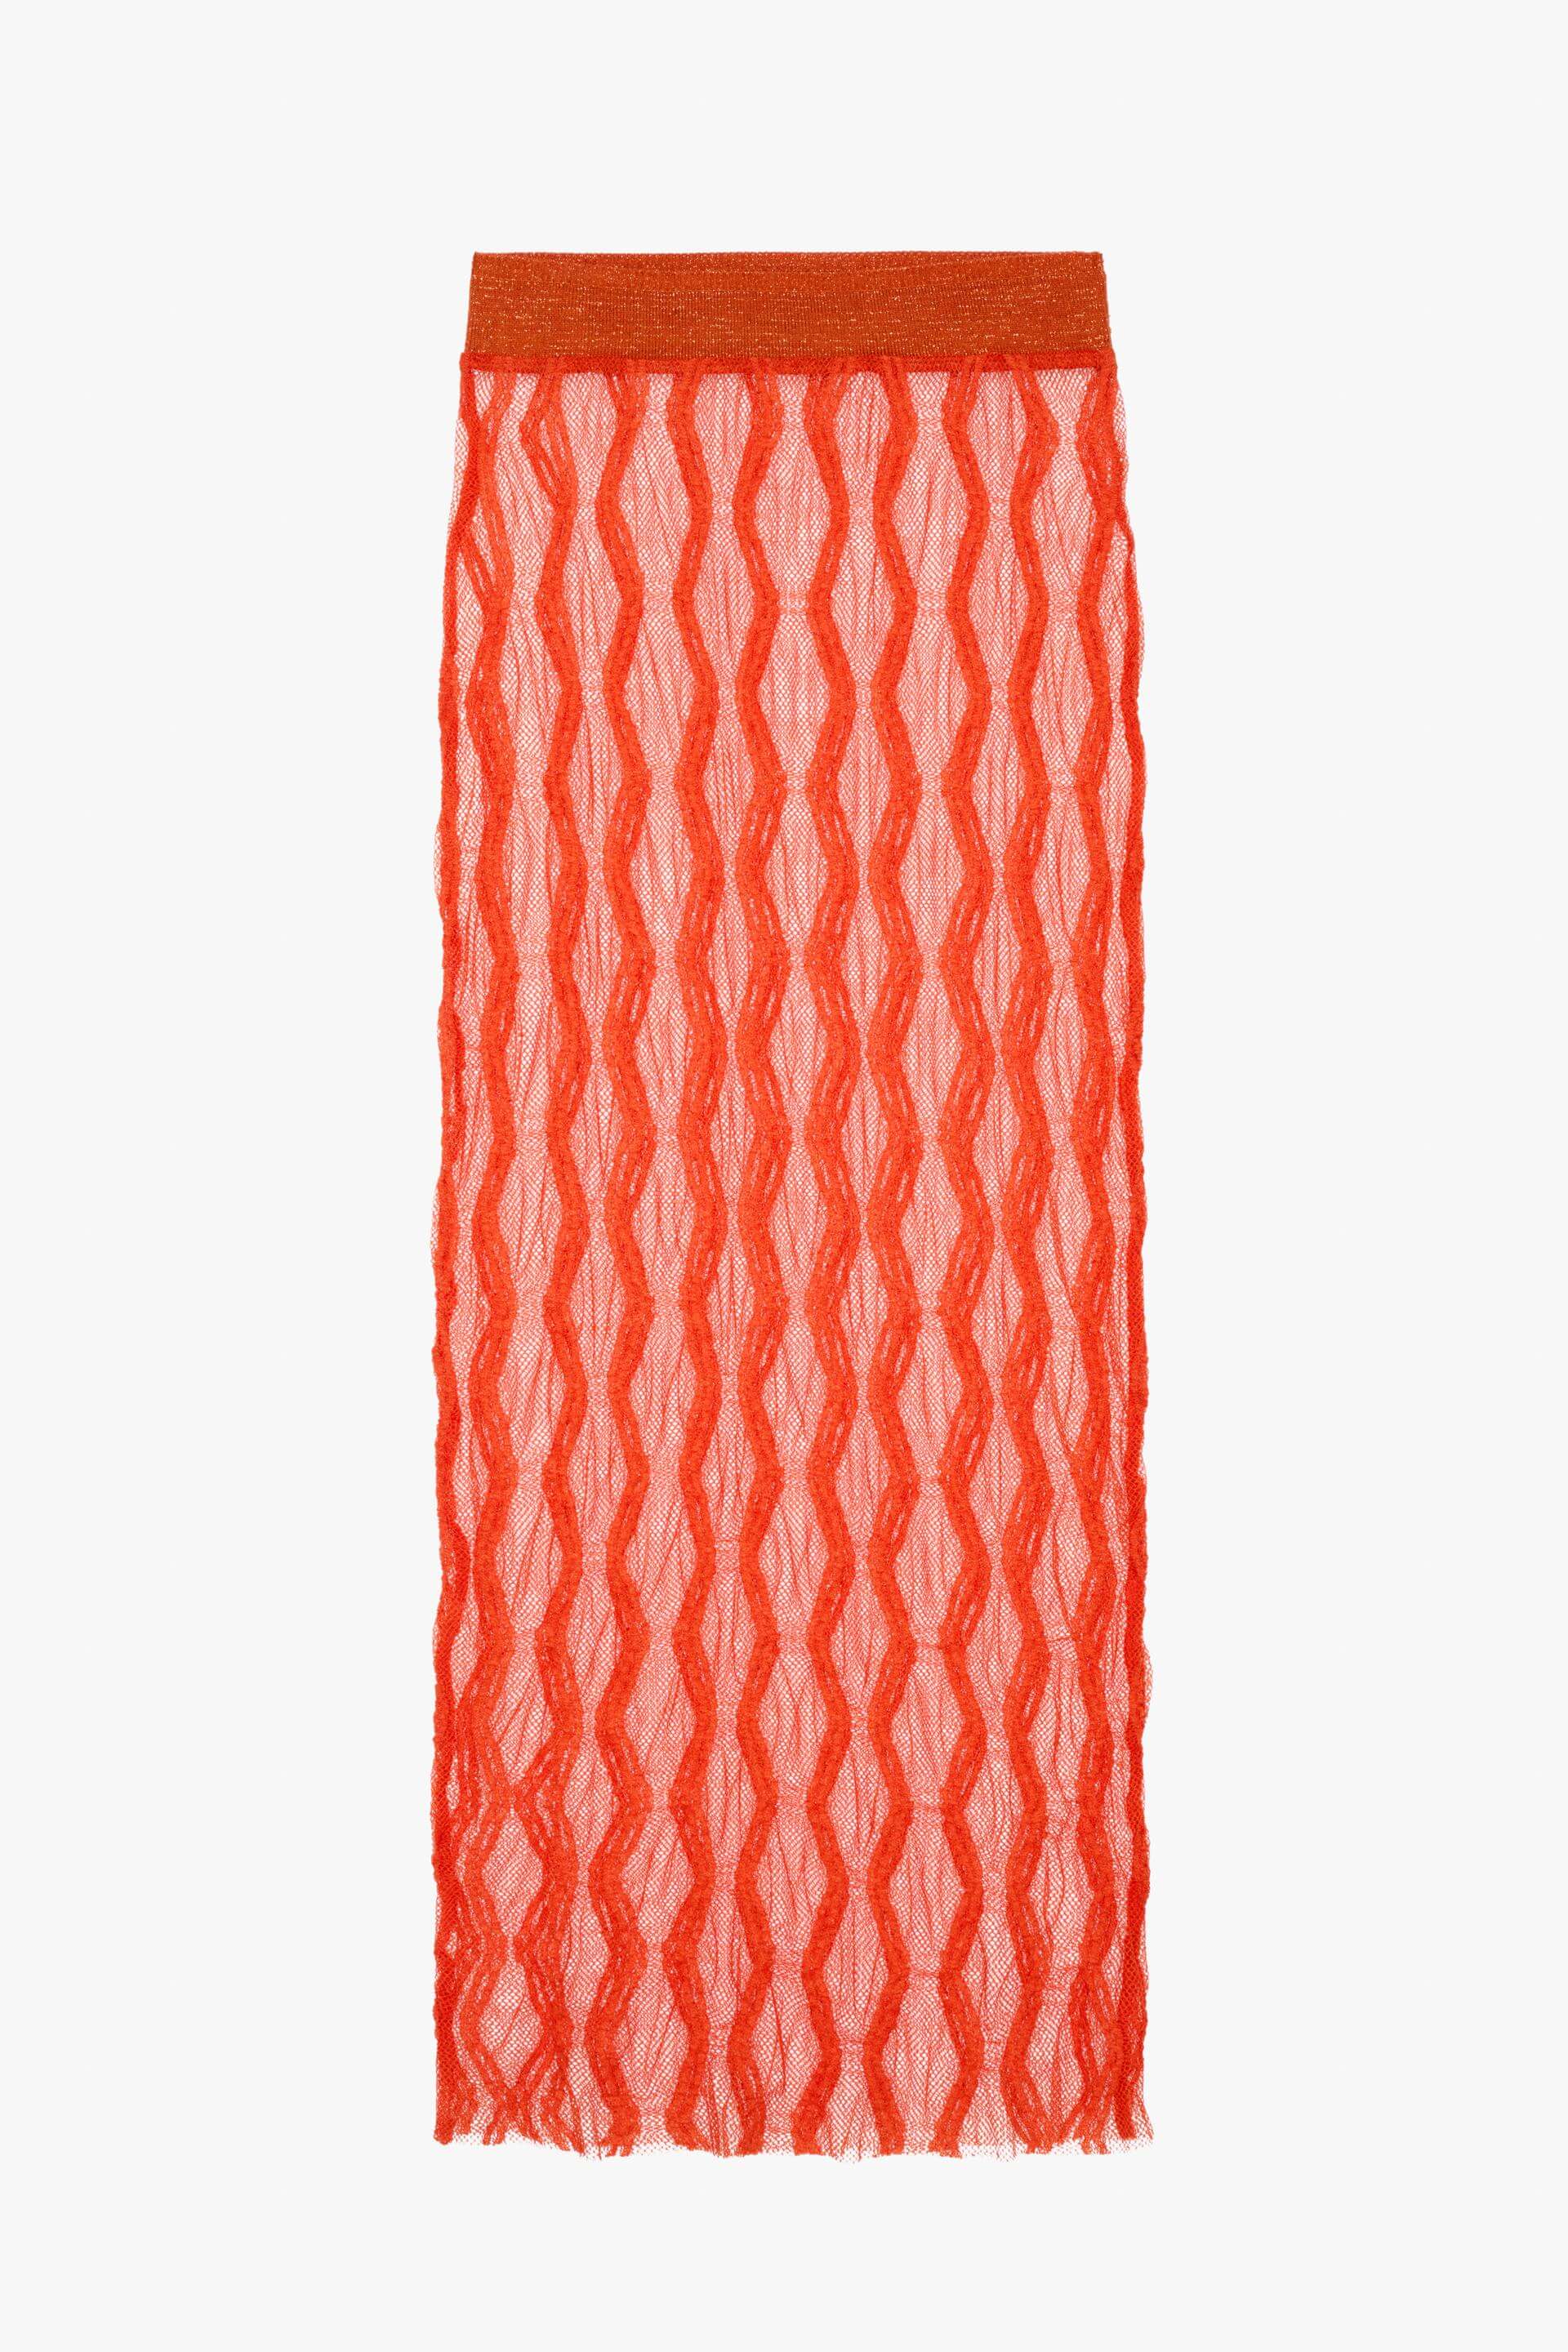 Юбка Zara Knit - Limited Edition, оранжевый юбка миди zara pointelle knit желтый